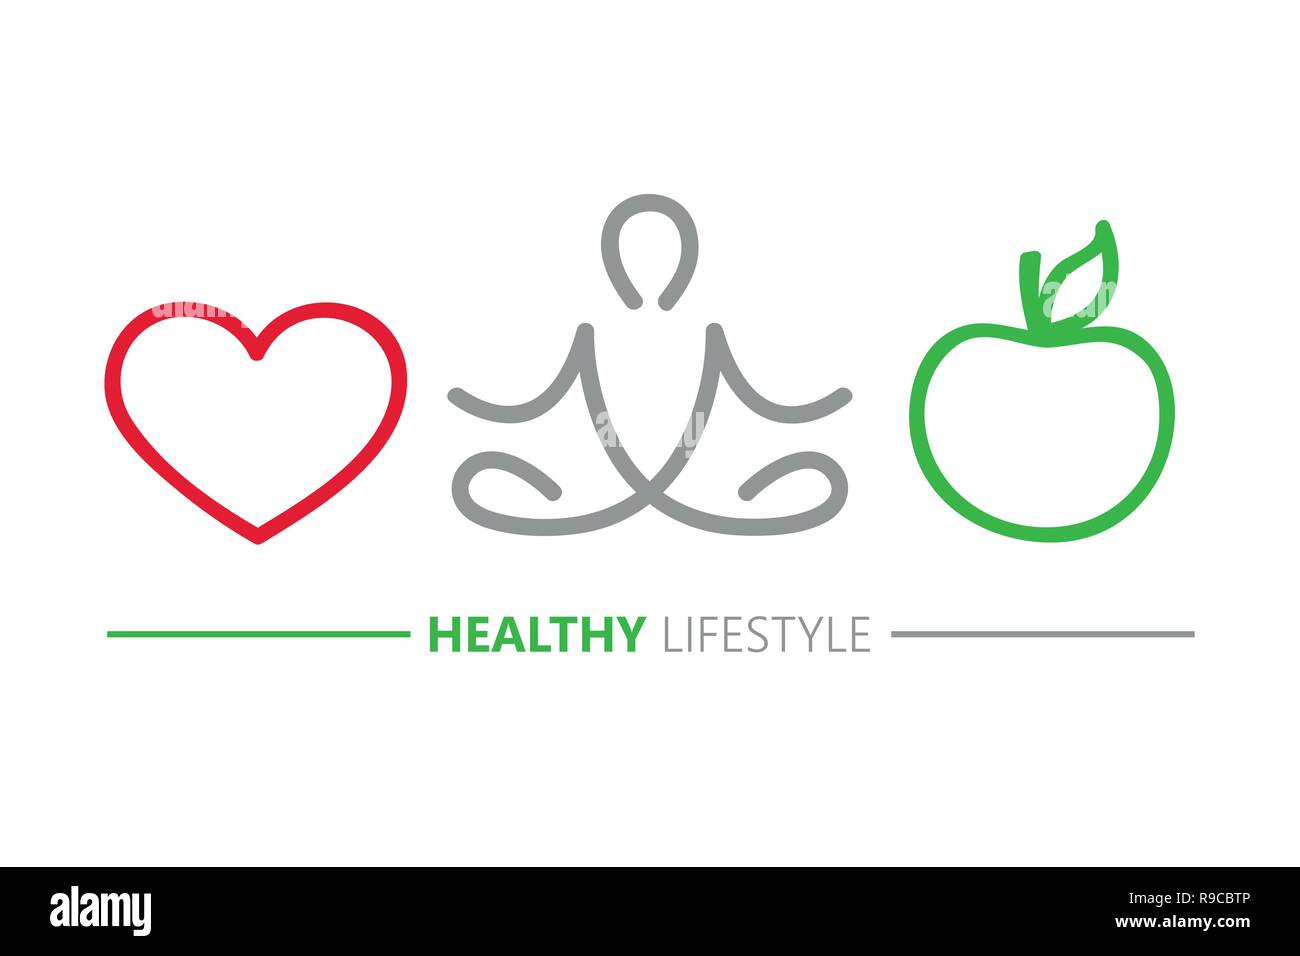 Uno stile di vita sano concetto cuore yoga e mela verde illustrazione vettoriale EPS10 Illustrazione Vettoriale